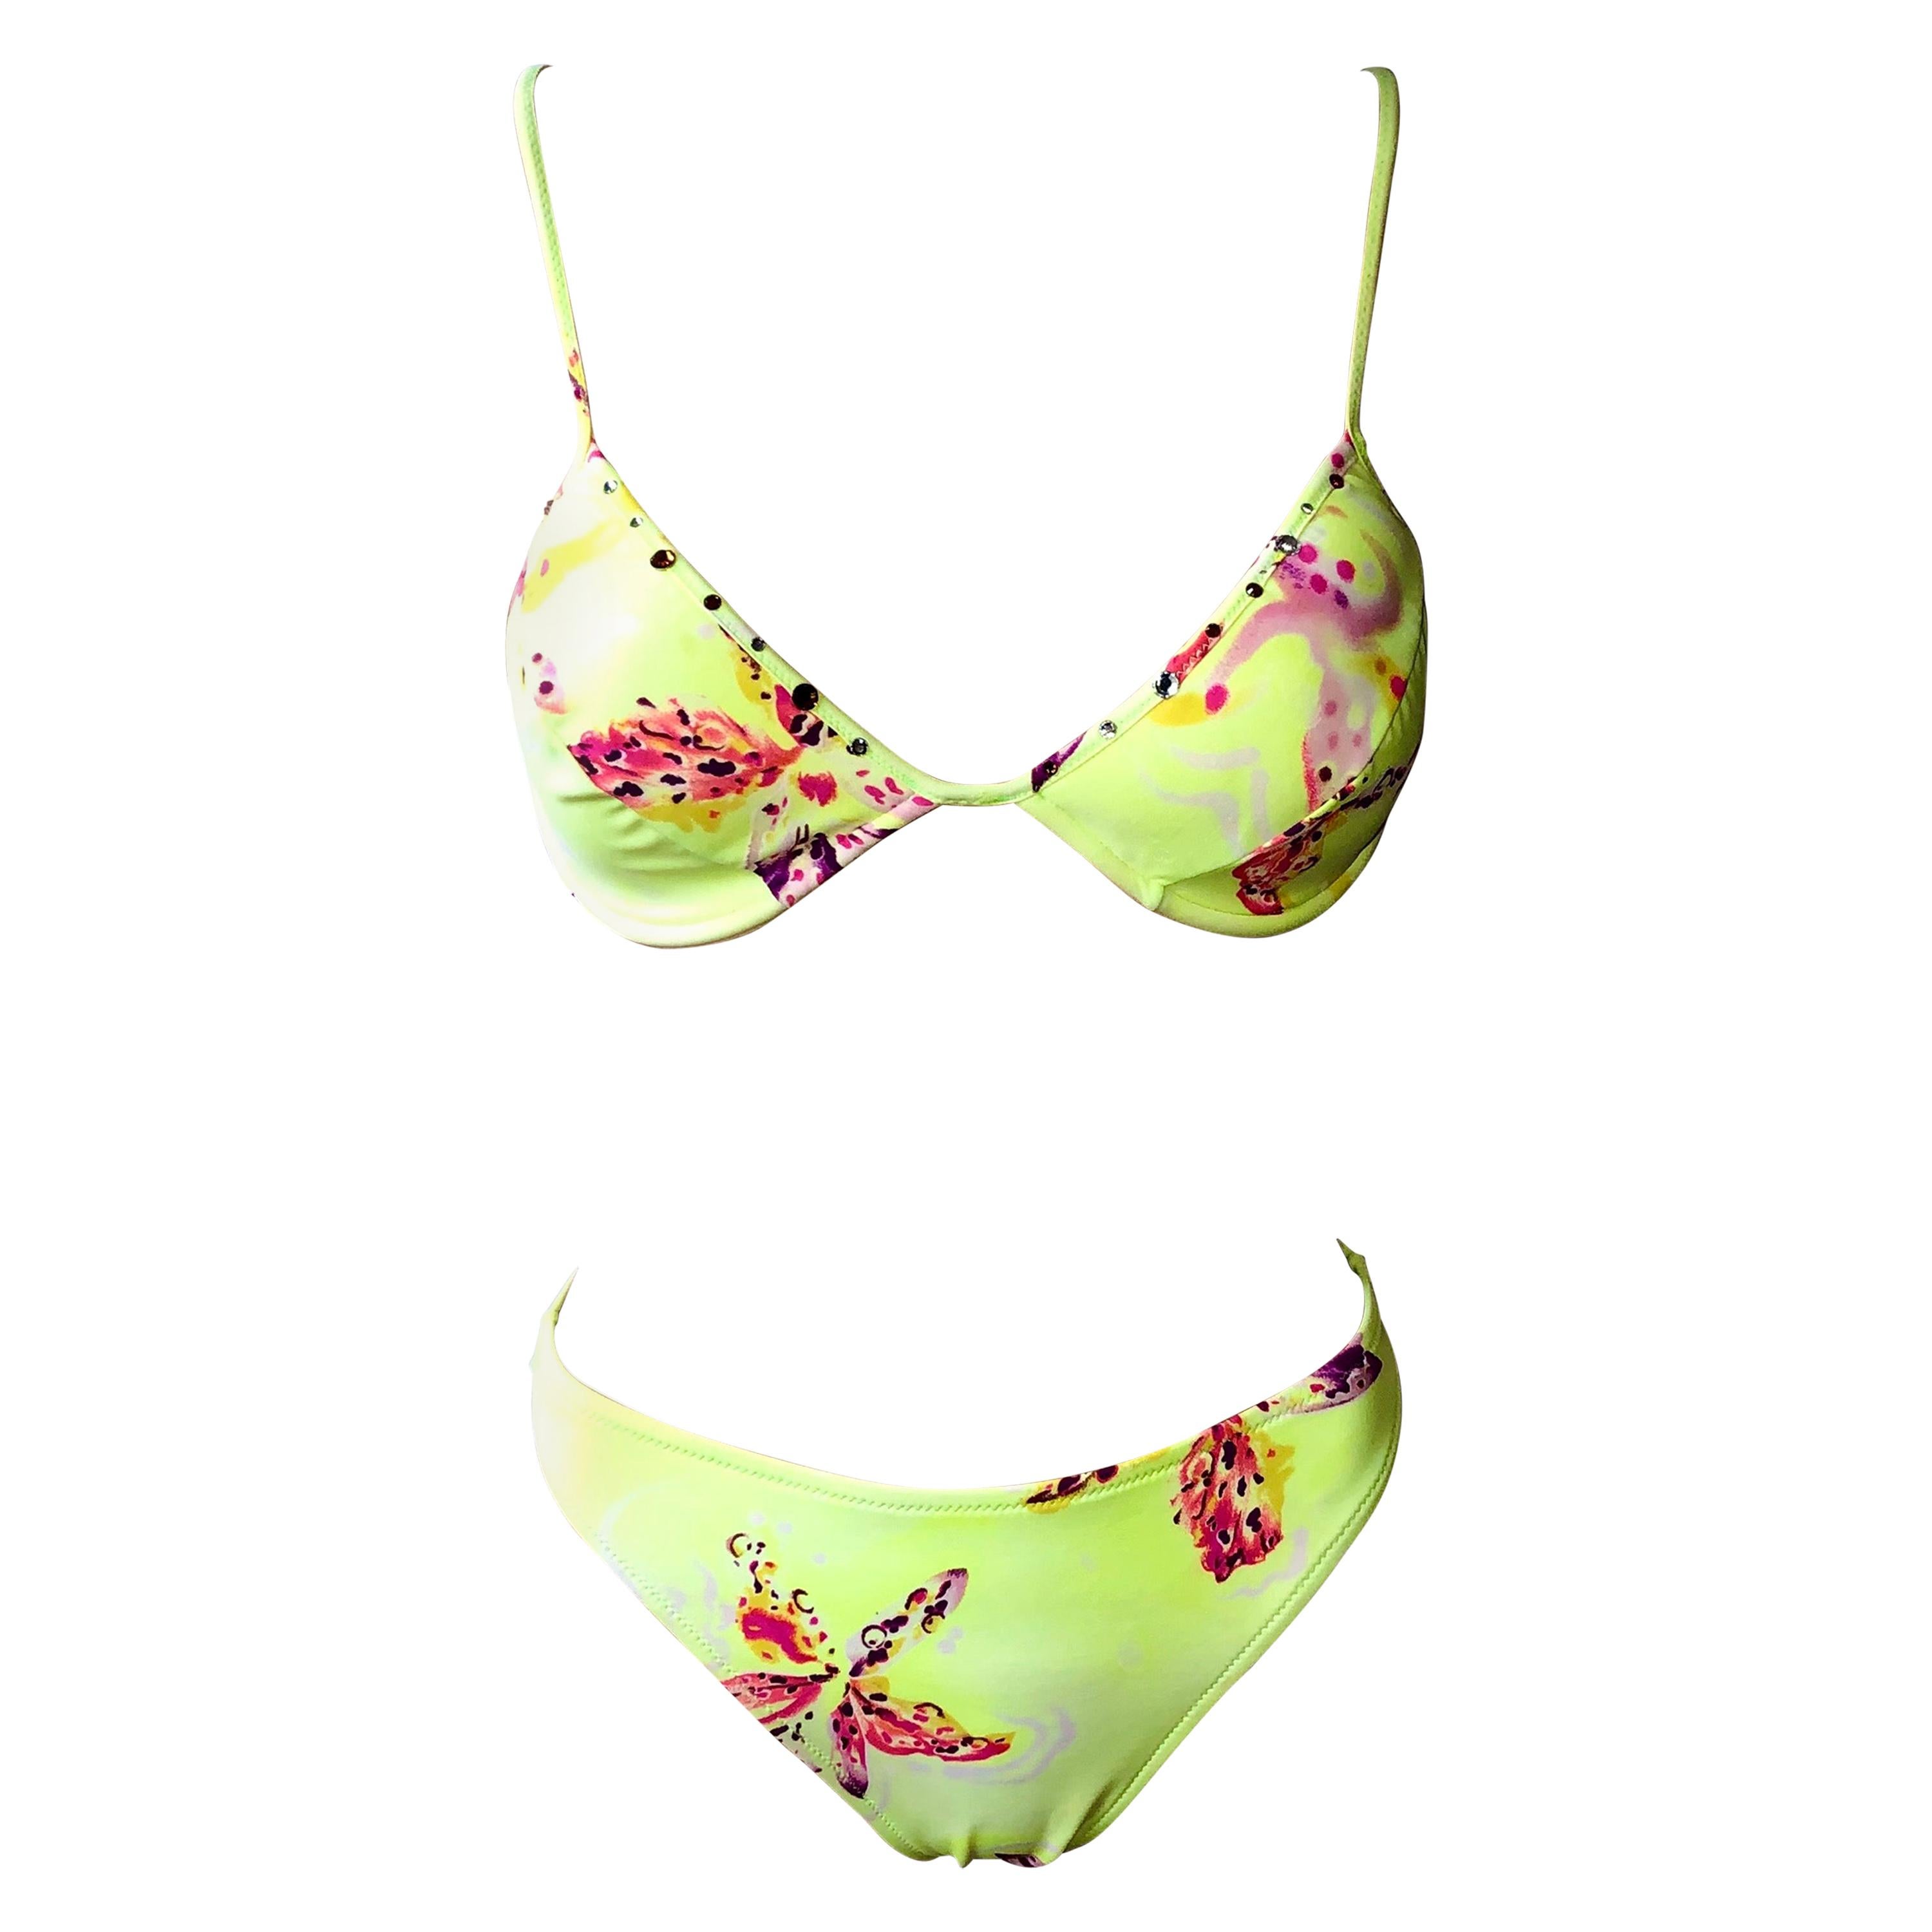 Ensemble Bikini deux pièces Gianni Versace Orchid Neon S/S 2000 - Maillot de bain et maillot de bain 